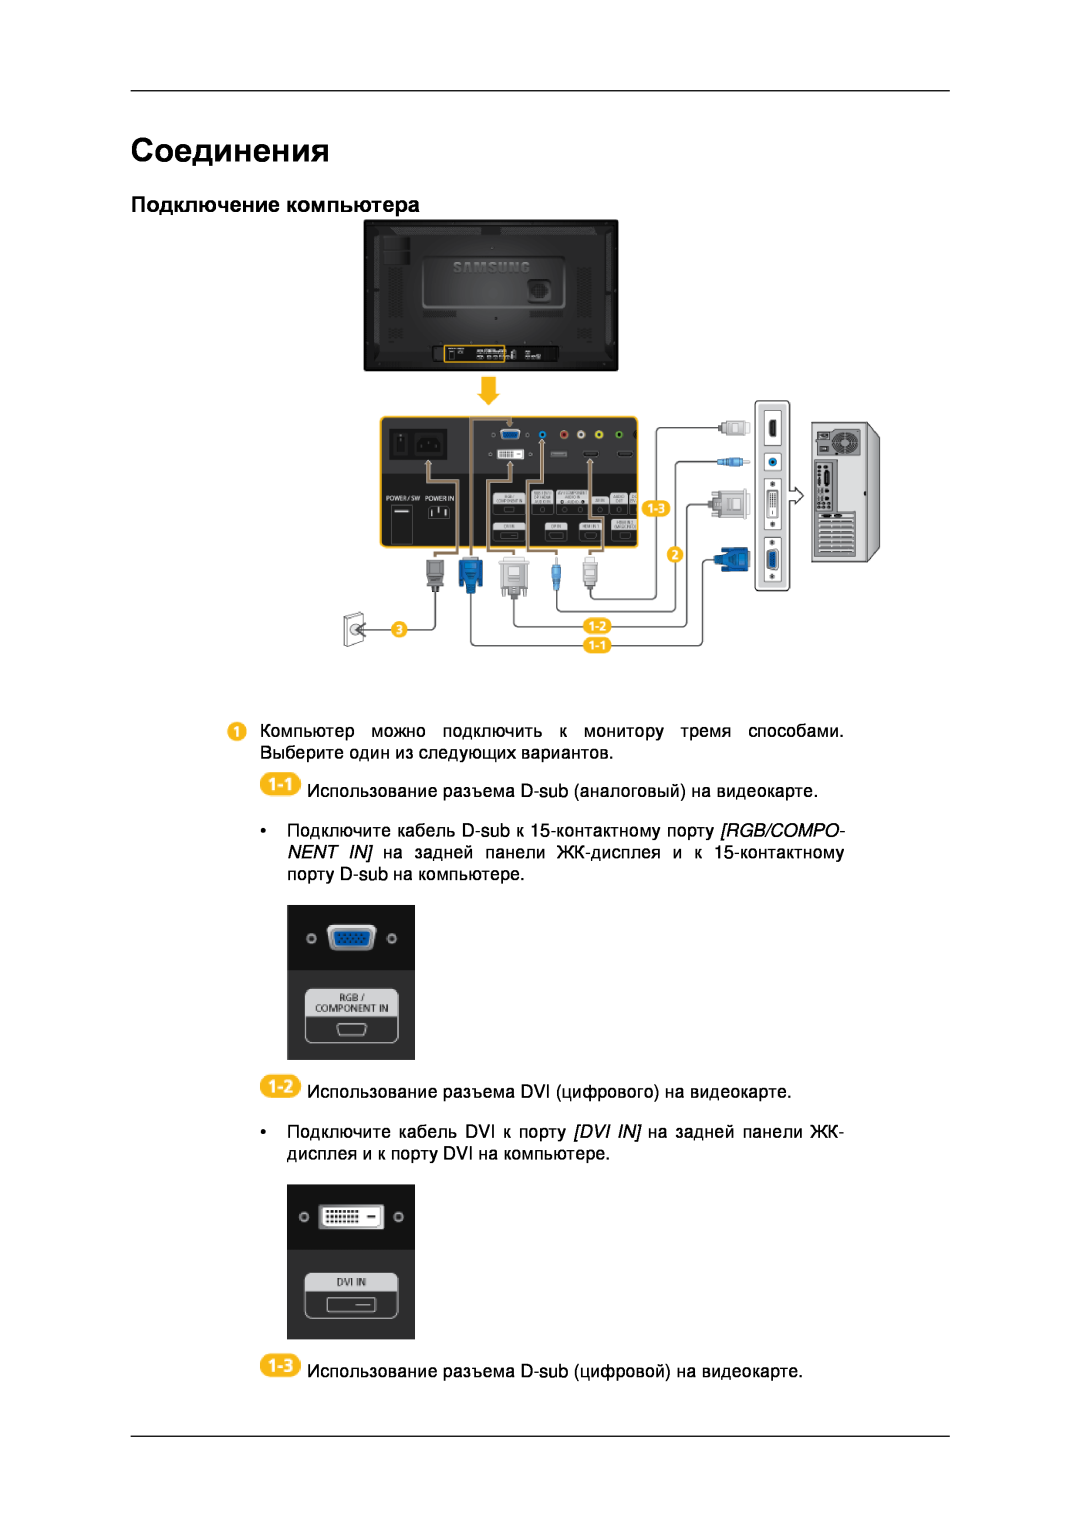 Samsung LH32CRSMBD/EN, LH32CRTMBC/EN manual Соединения, Подключение компьютера 